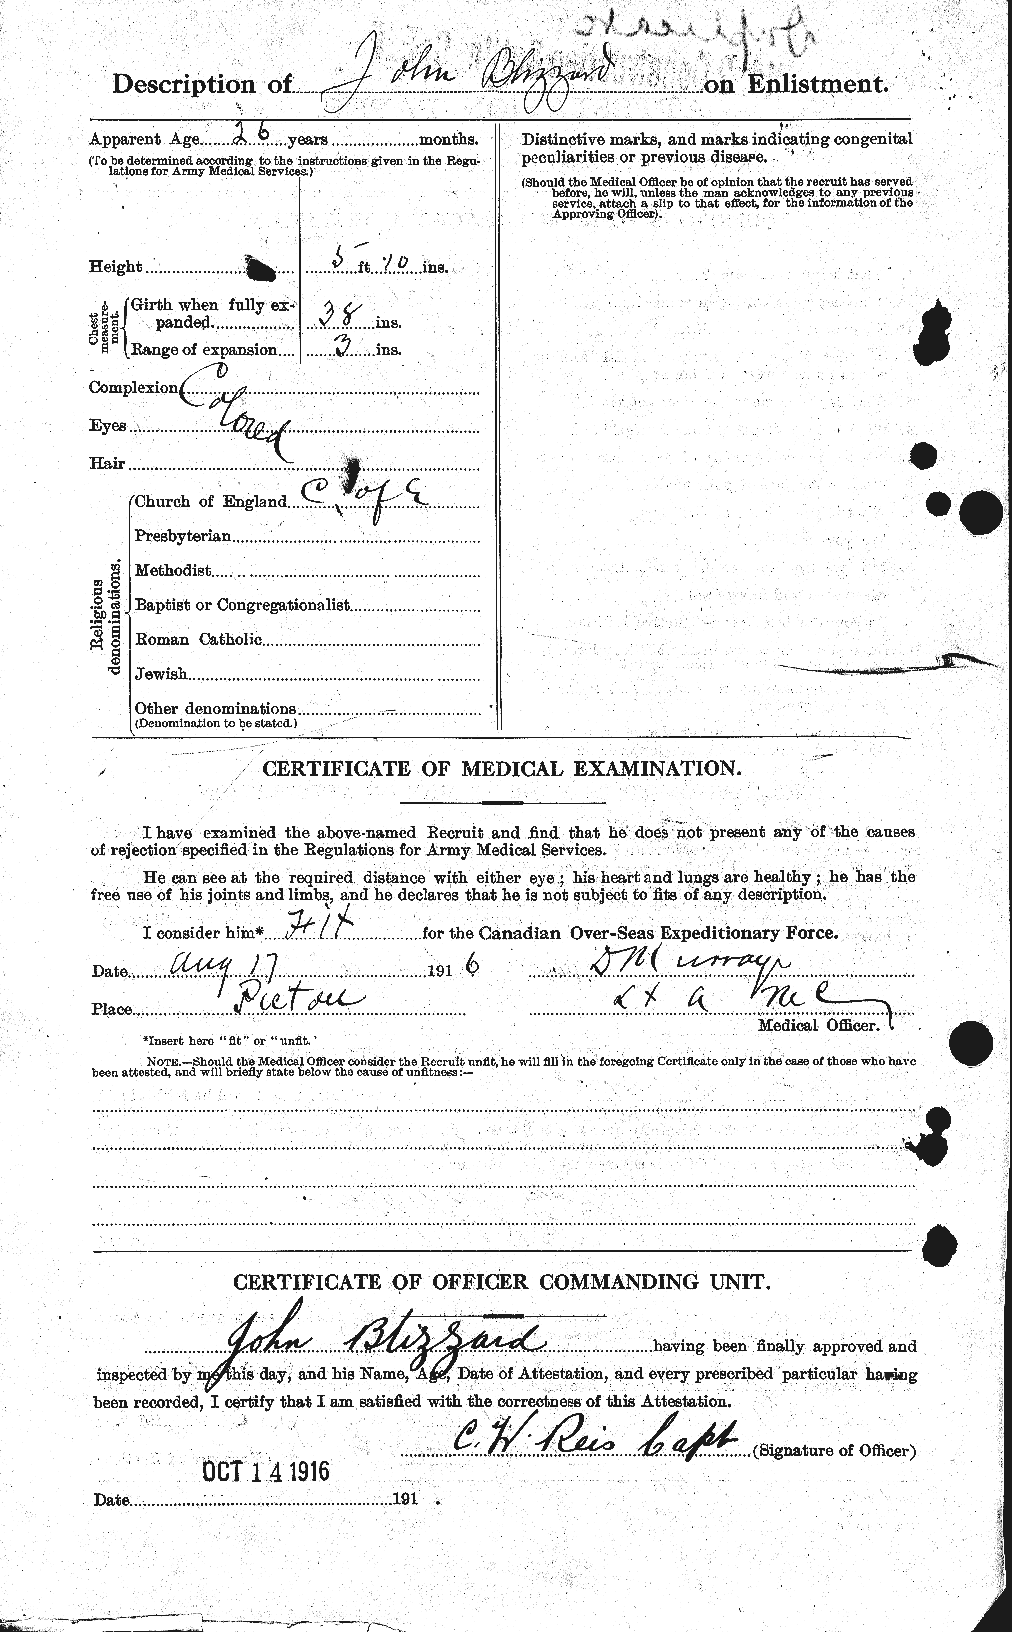 Dossiers du Personnel de la Première Guerre mondiale - CEC 248401b